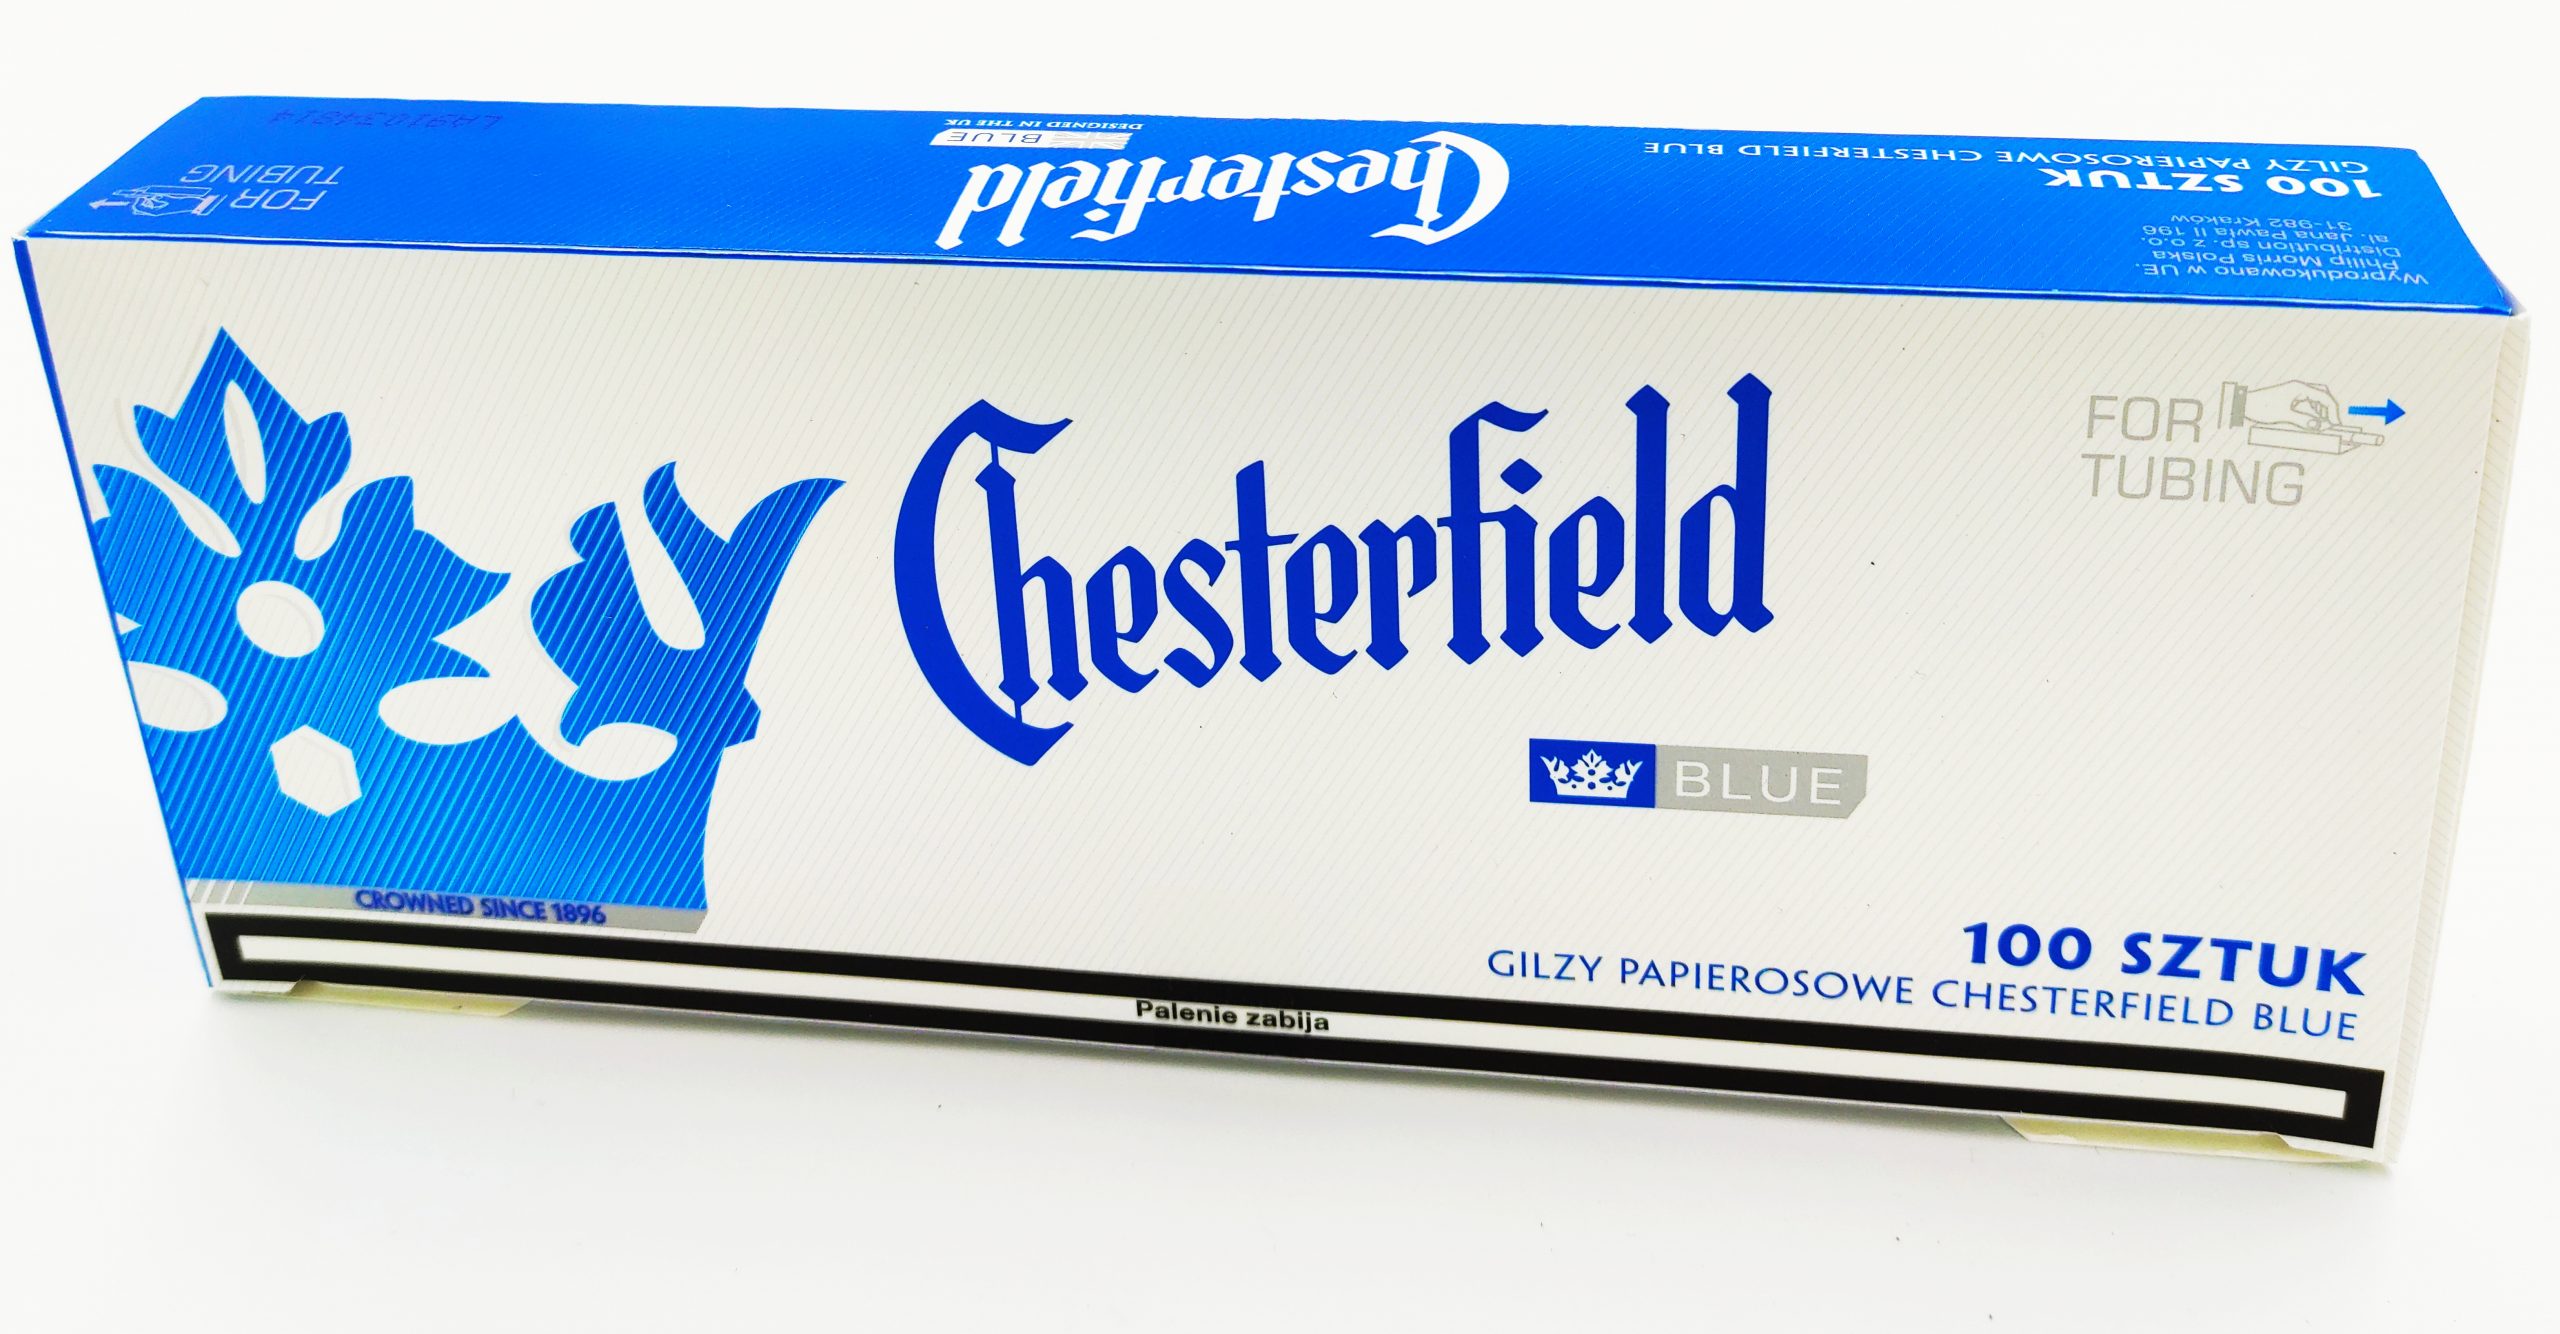 gilzy chesterfield blue 100szt - 4zł